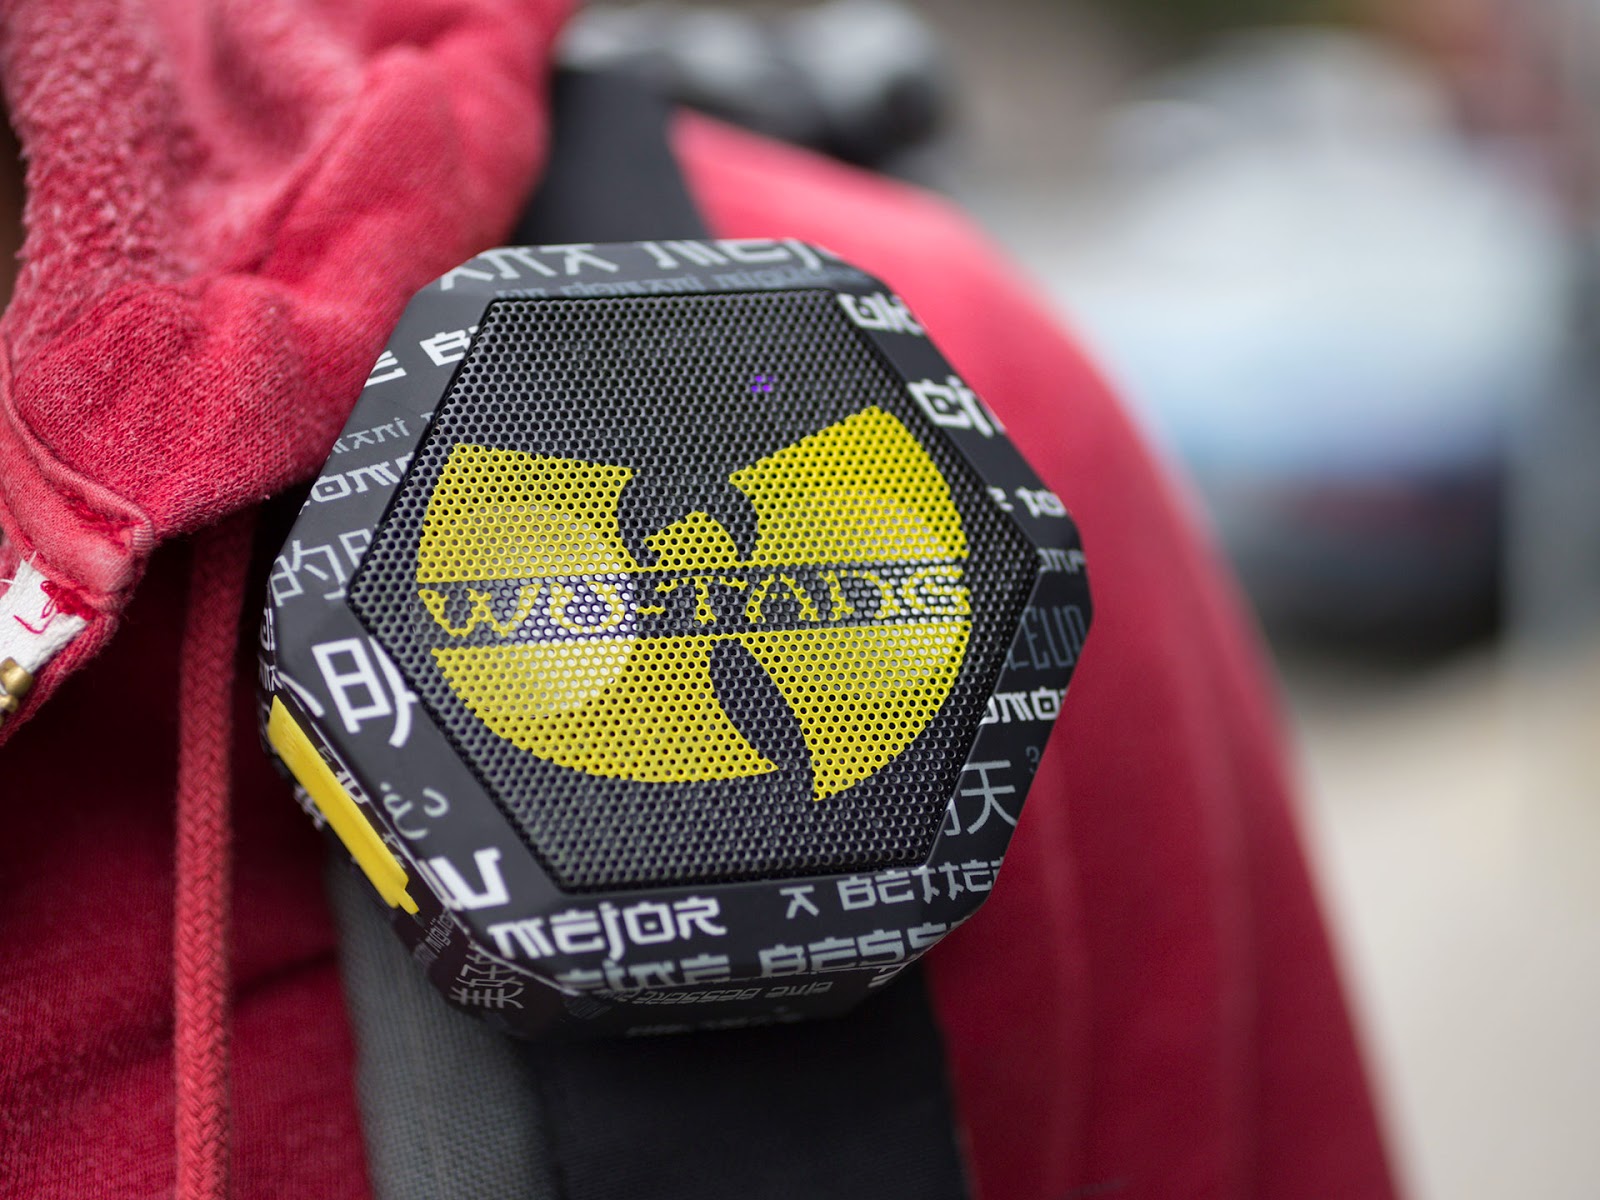 Wu-Tang Clan Boombotix REX speaker image